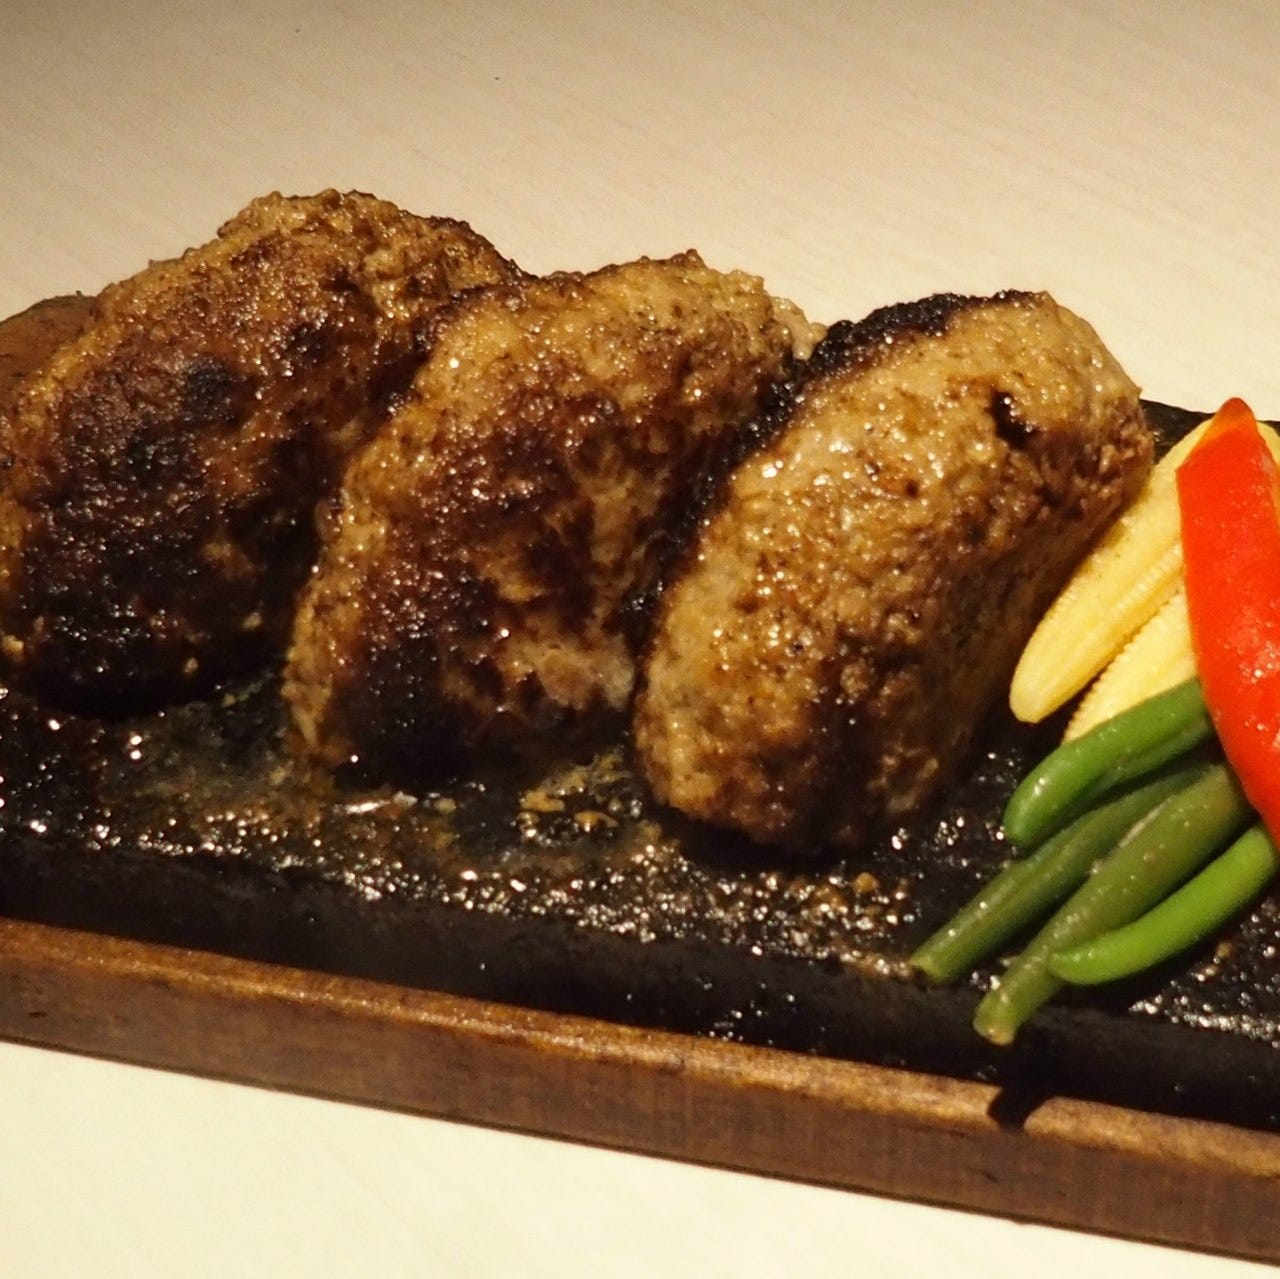 溶岩焼肉ダイニングbonbori（ボンボリ） 新宿店の「牛ハンバーグステーキの溶岩焼 300g」